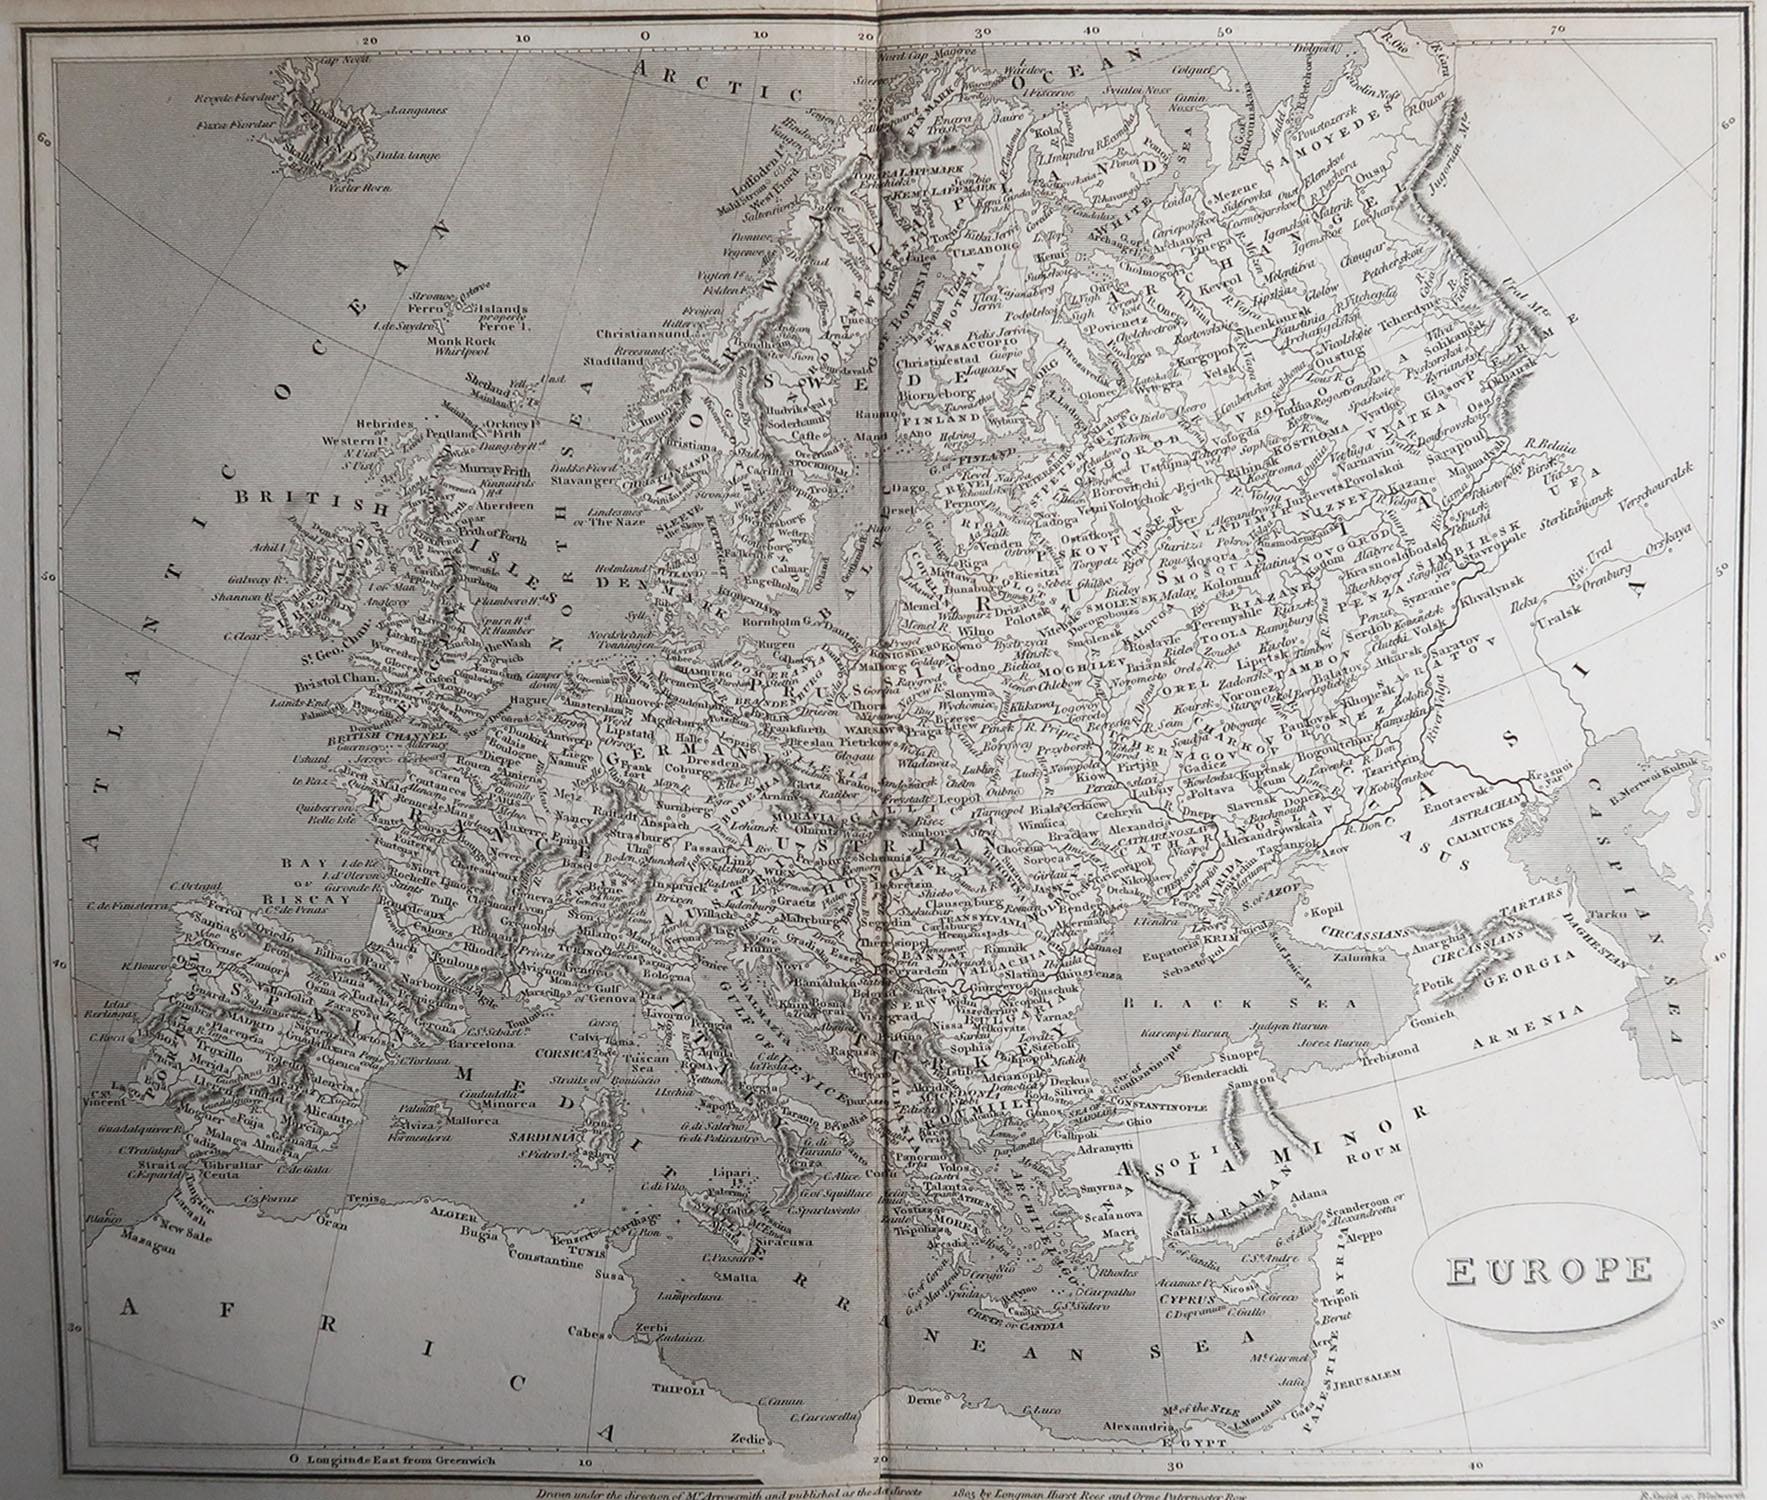 Grande carte de l'Europe

Dessiné sous la direction d'Arrowsmith.

Gravure sur cuivre.

Publié par Longman, Hurst, Rees, Orme et Brown, 1820

Non encadré.